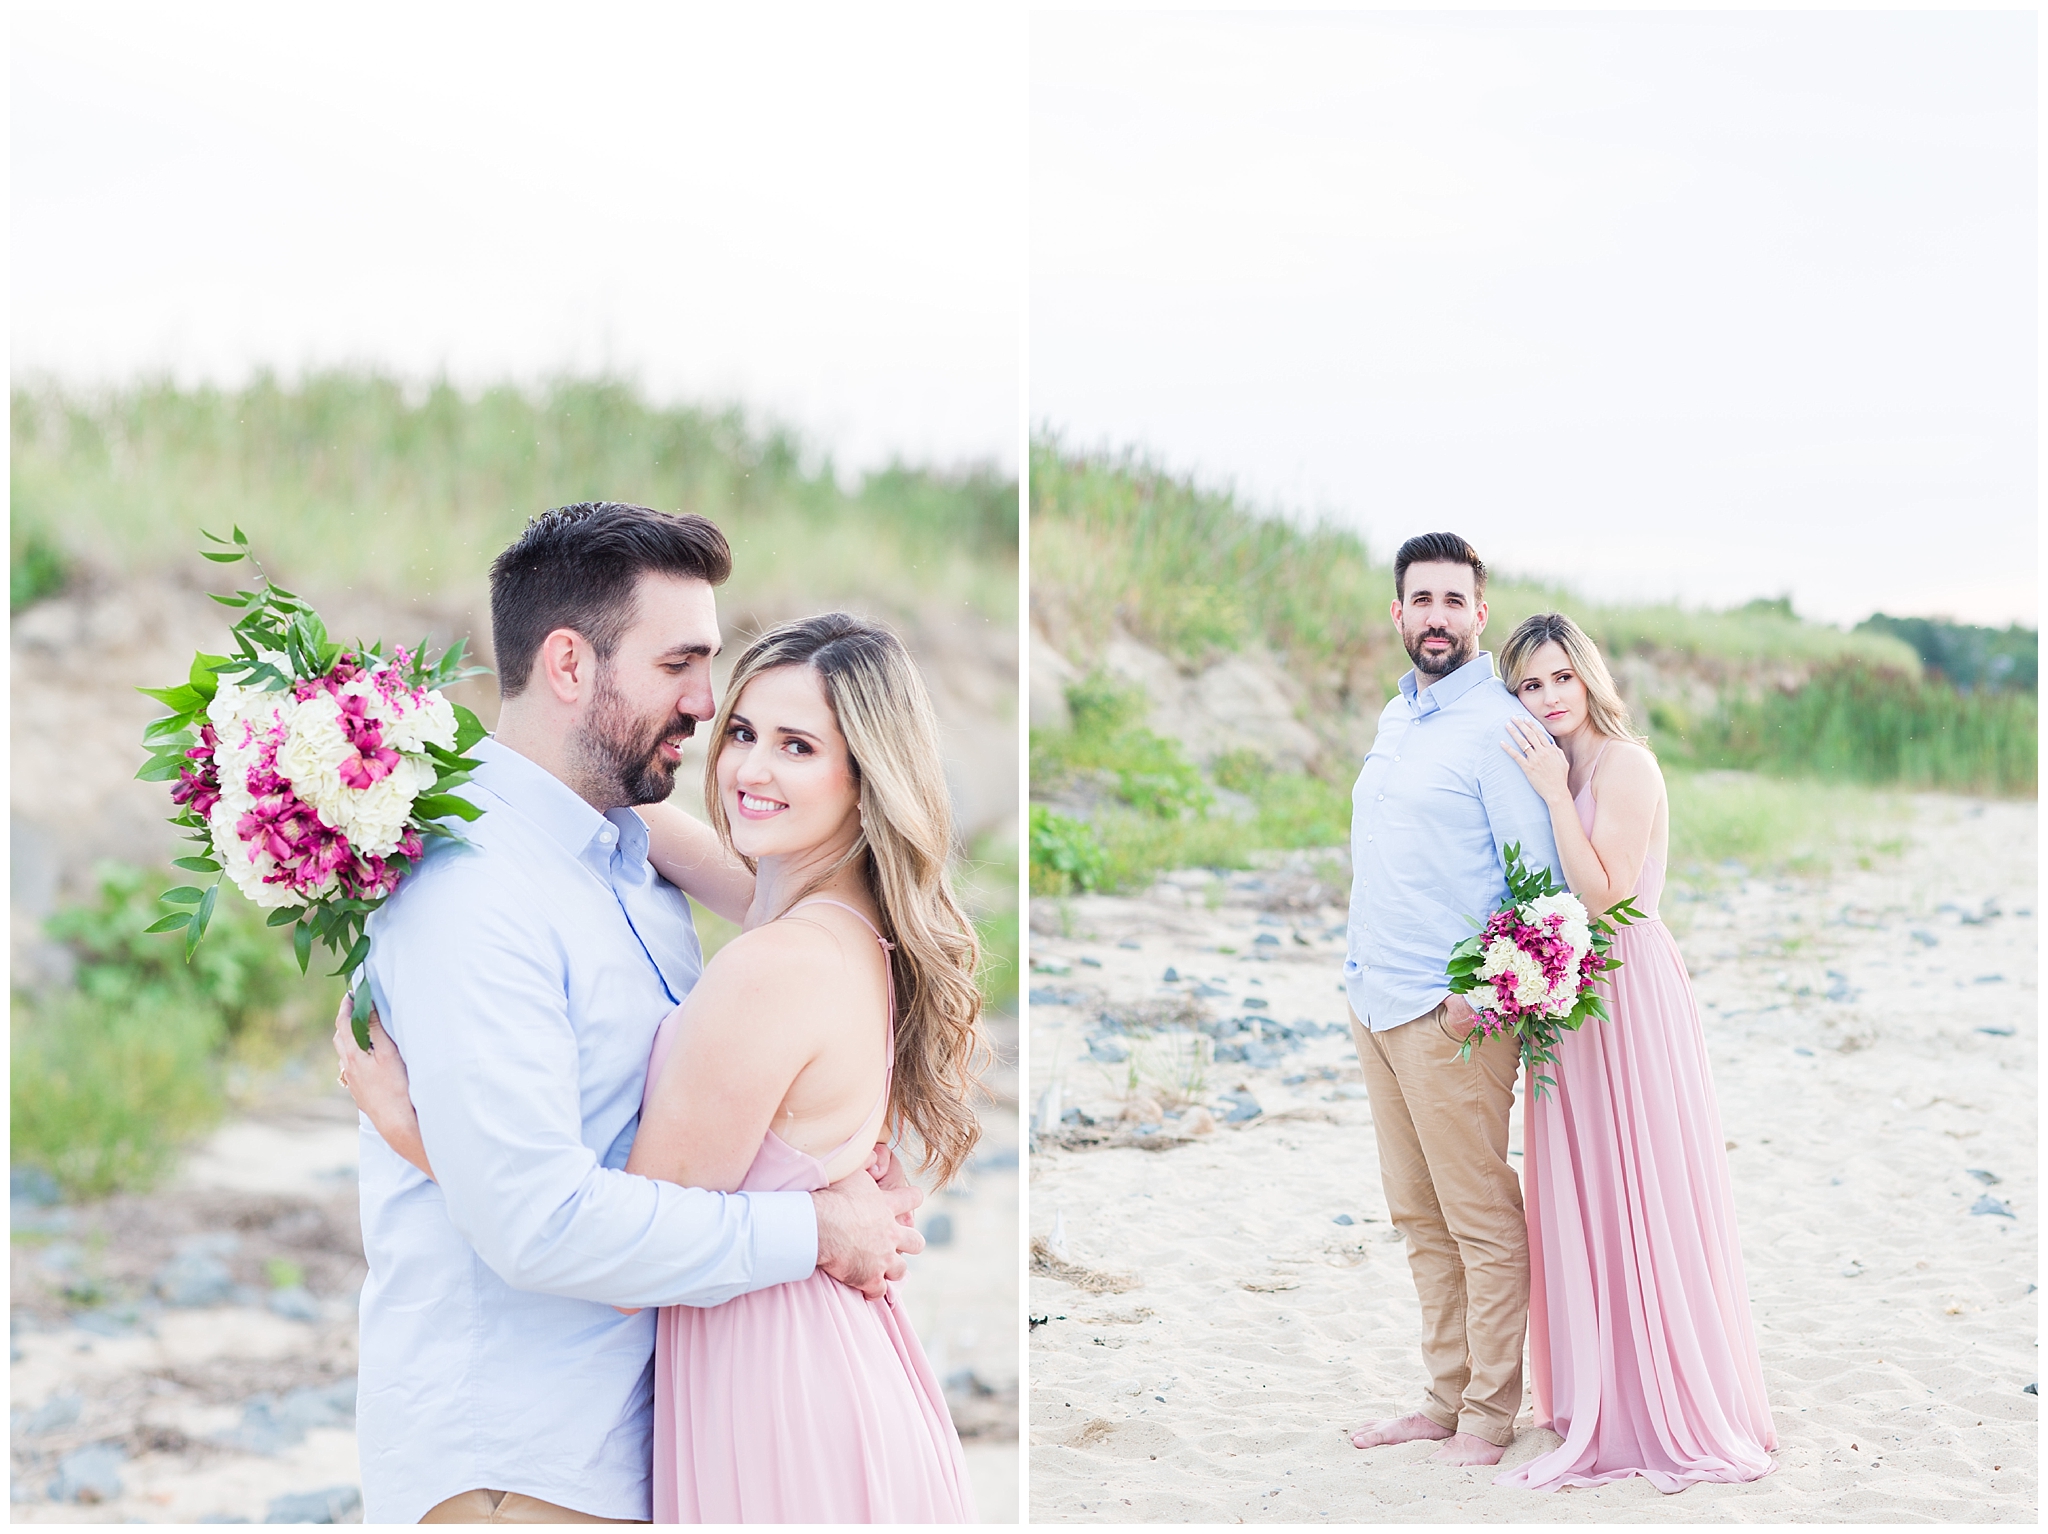 Adam + Marilia | Cape Cod Beach Engagement